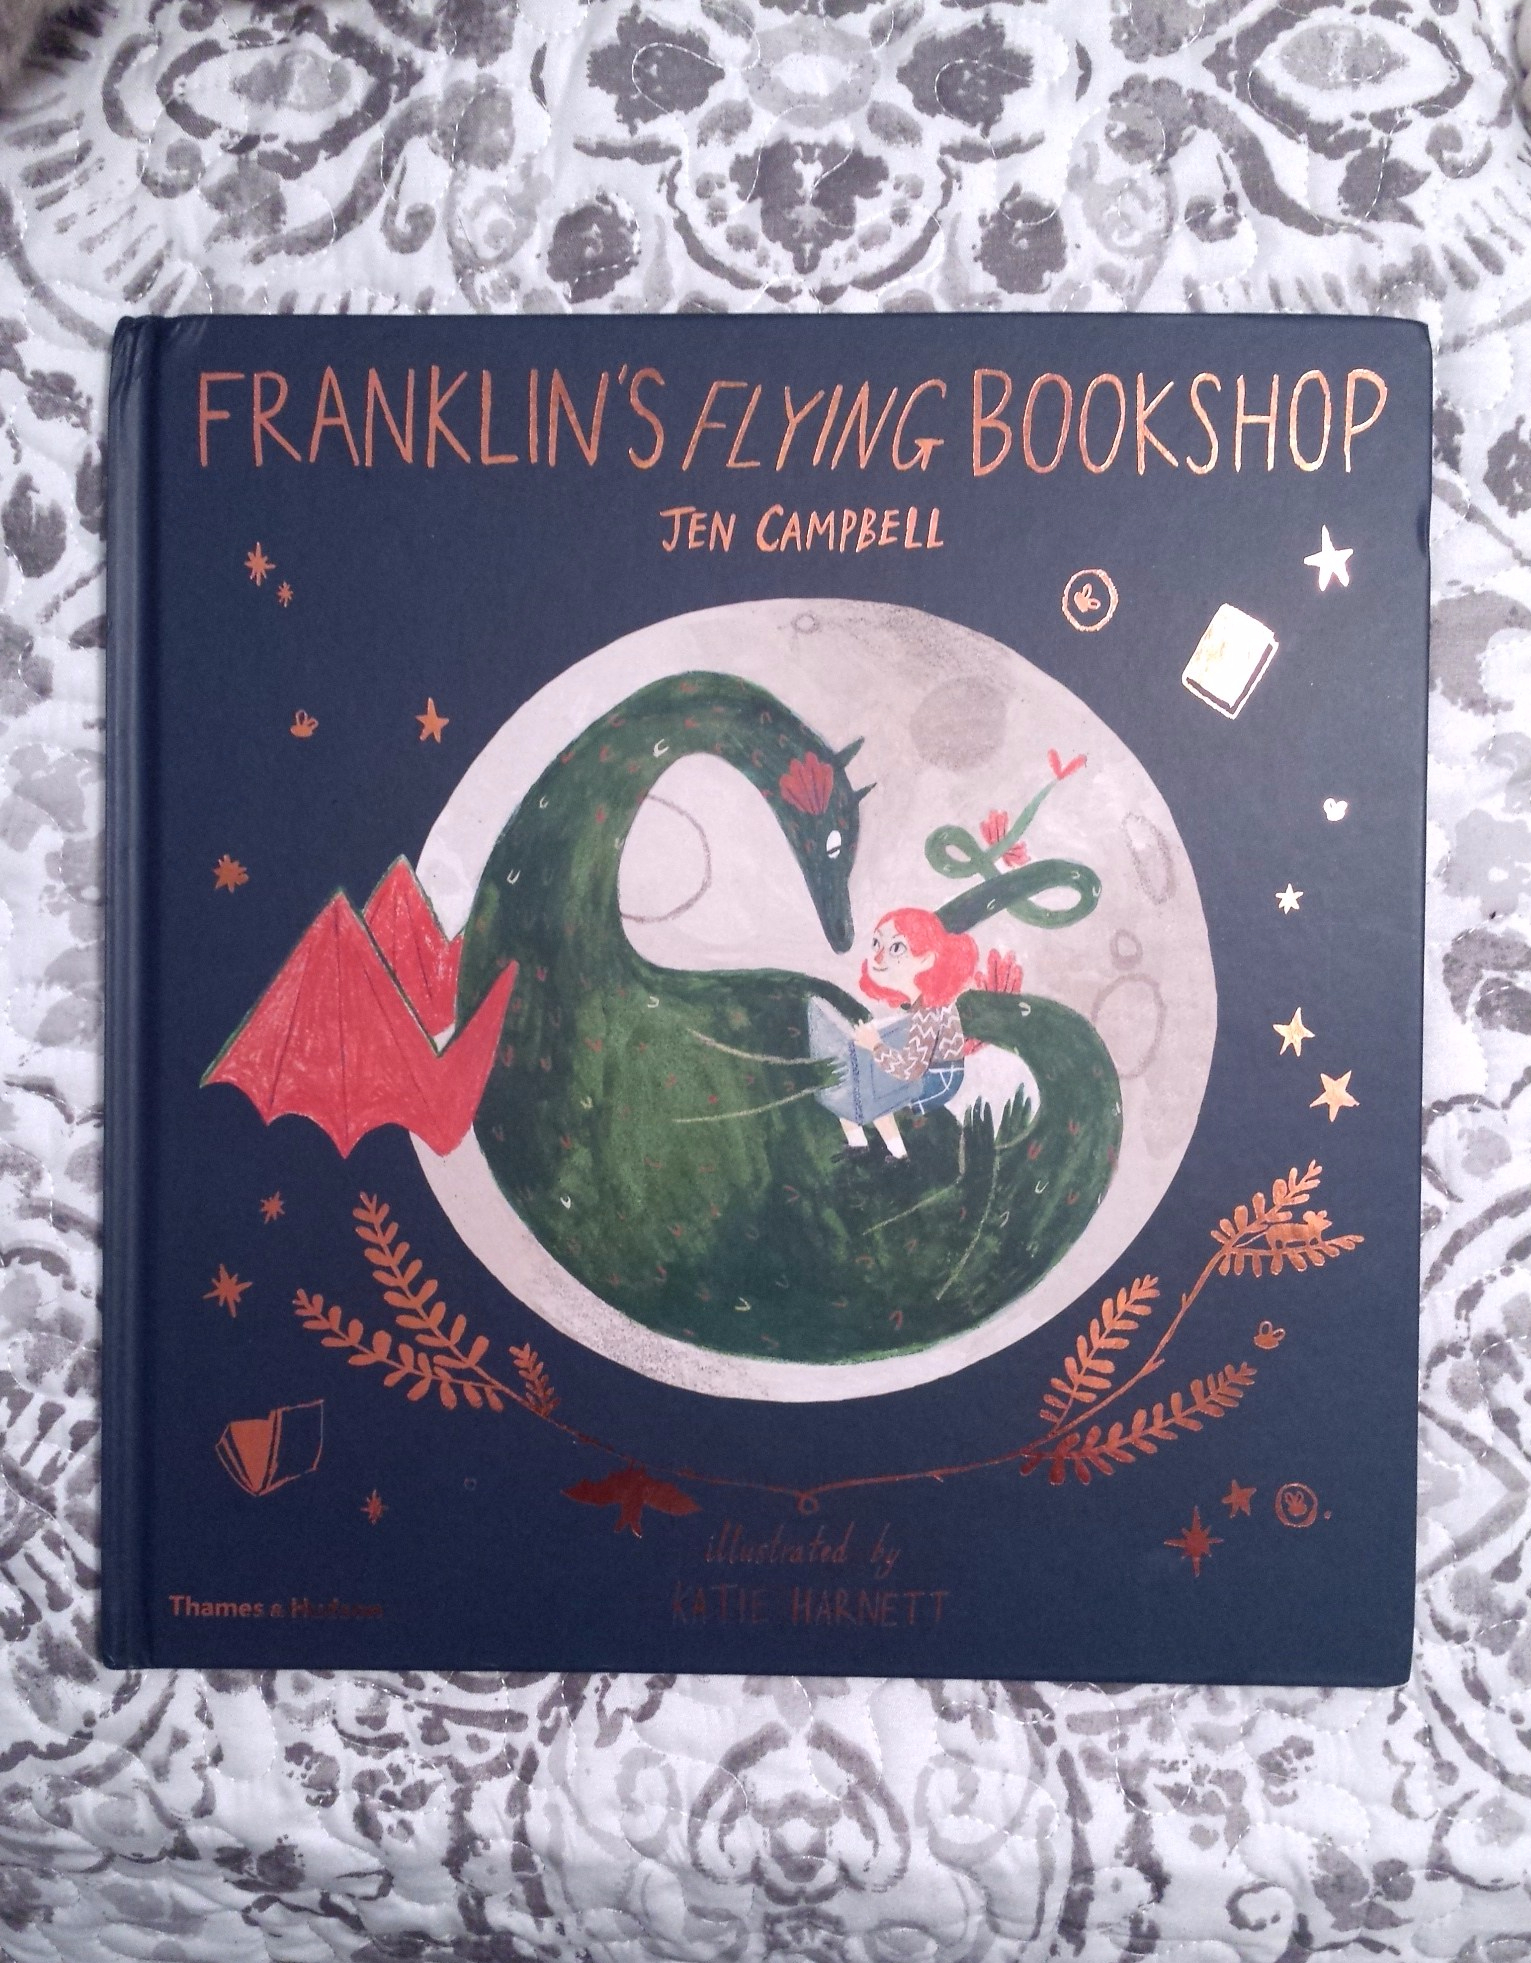 Franklin's Flying Bookshop by Jen Campbell & Katie Harnett